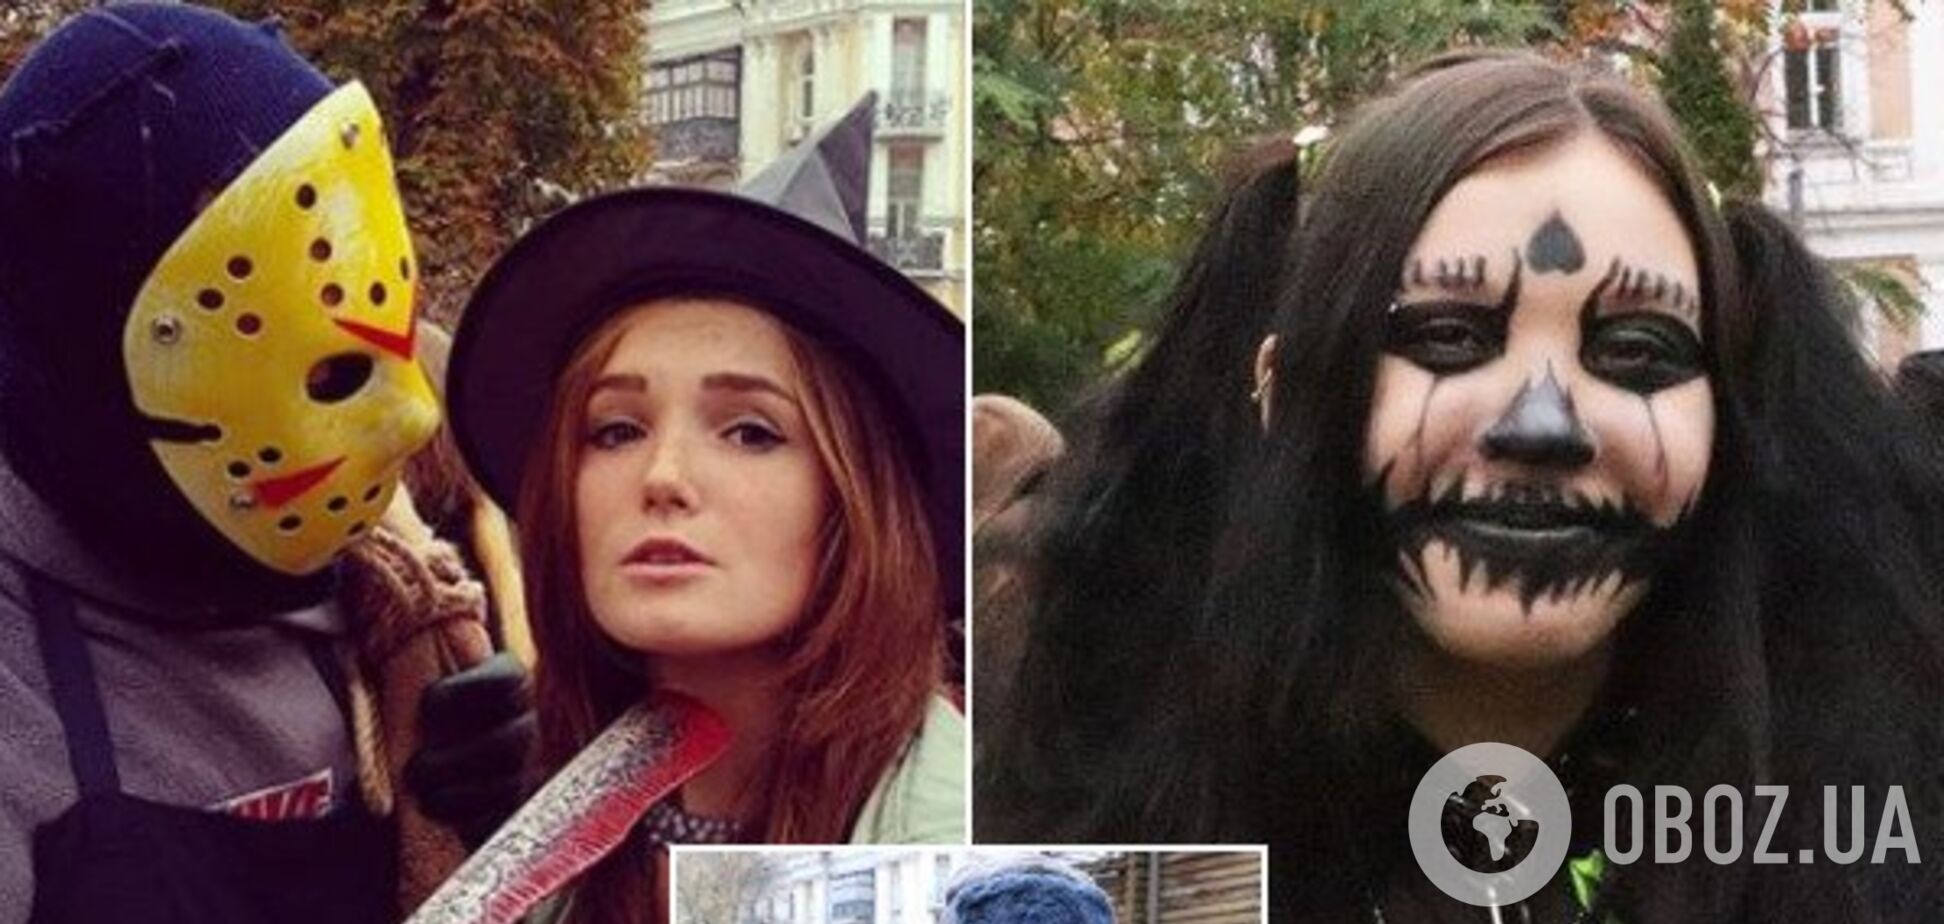 Ведьмы и маньяки: Киев напугали мистические персонажи на 'Параде зомби'. Жуткие фото